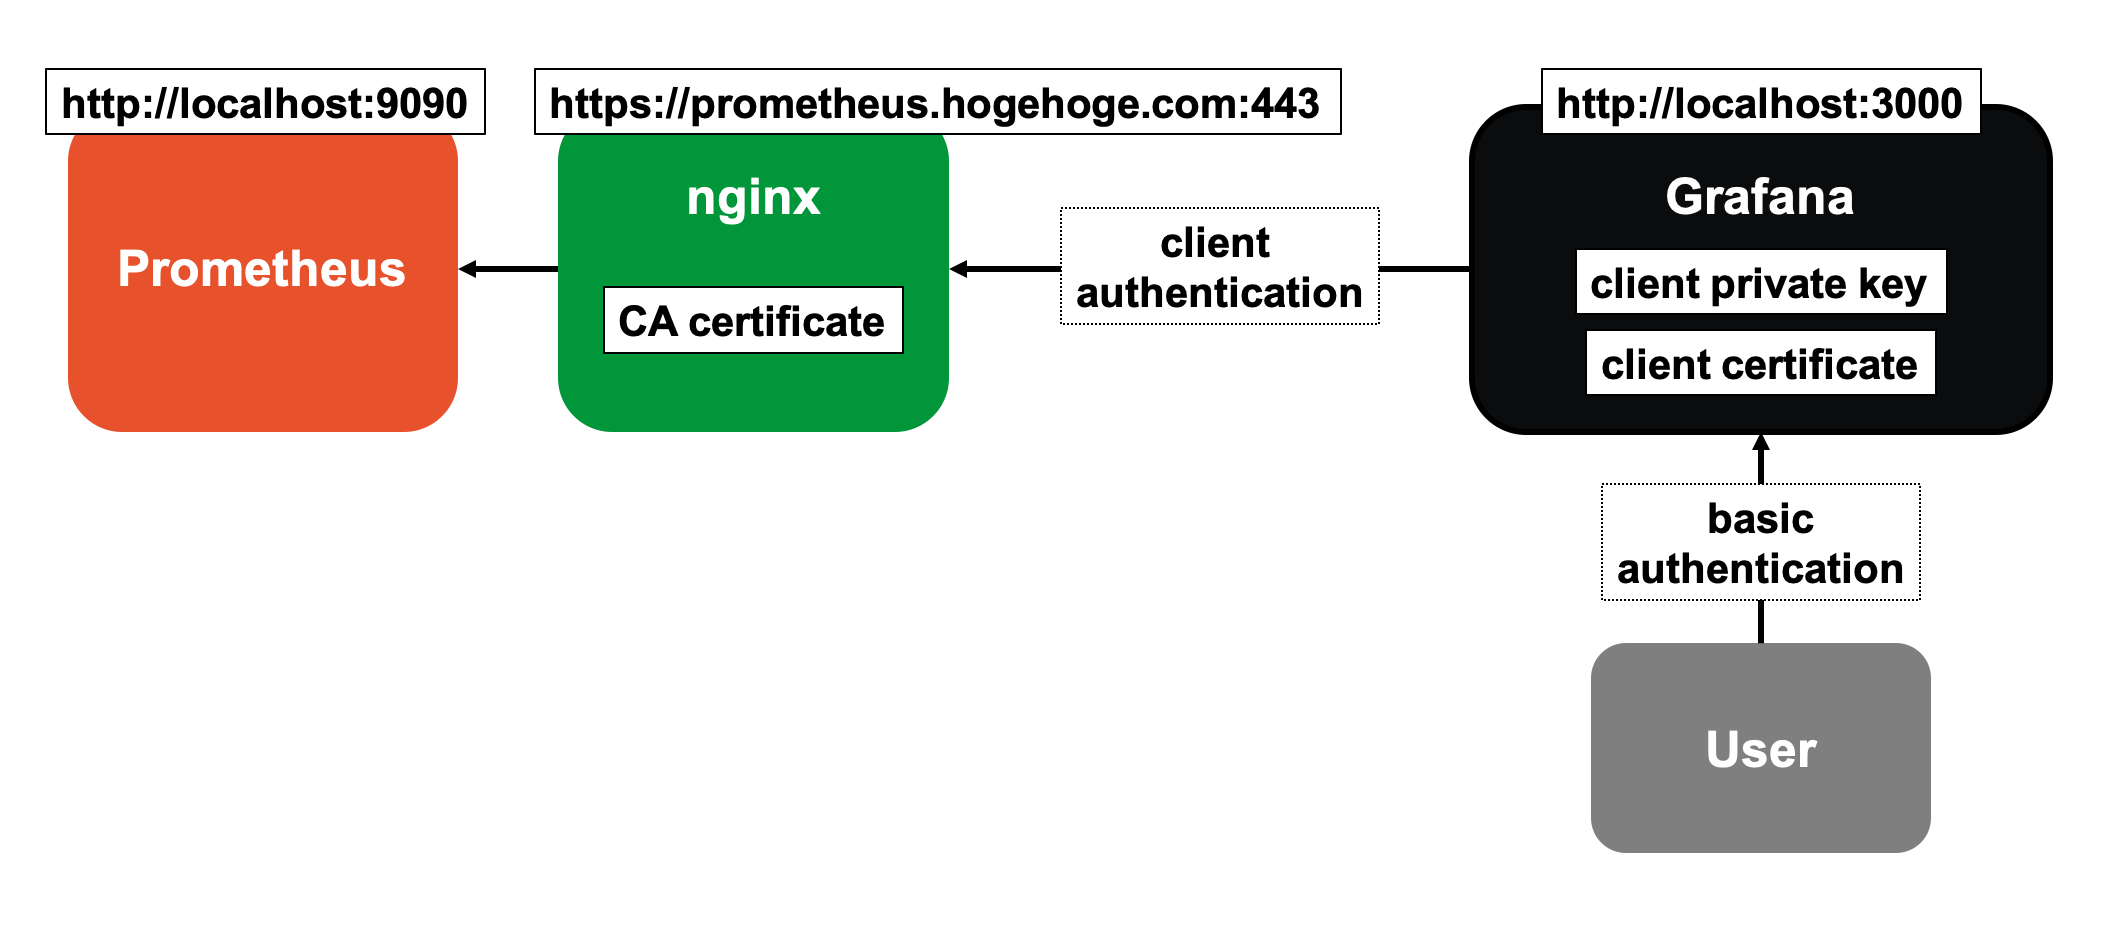 クライアント認証のかかったPrometheus+nginxにGrafanaからアクセスする